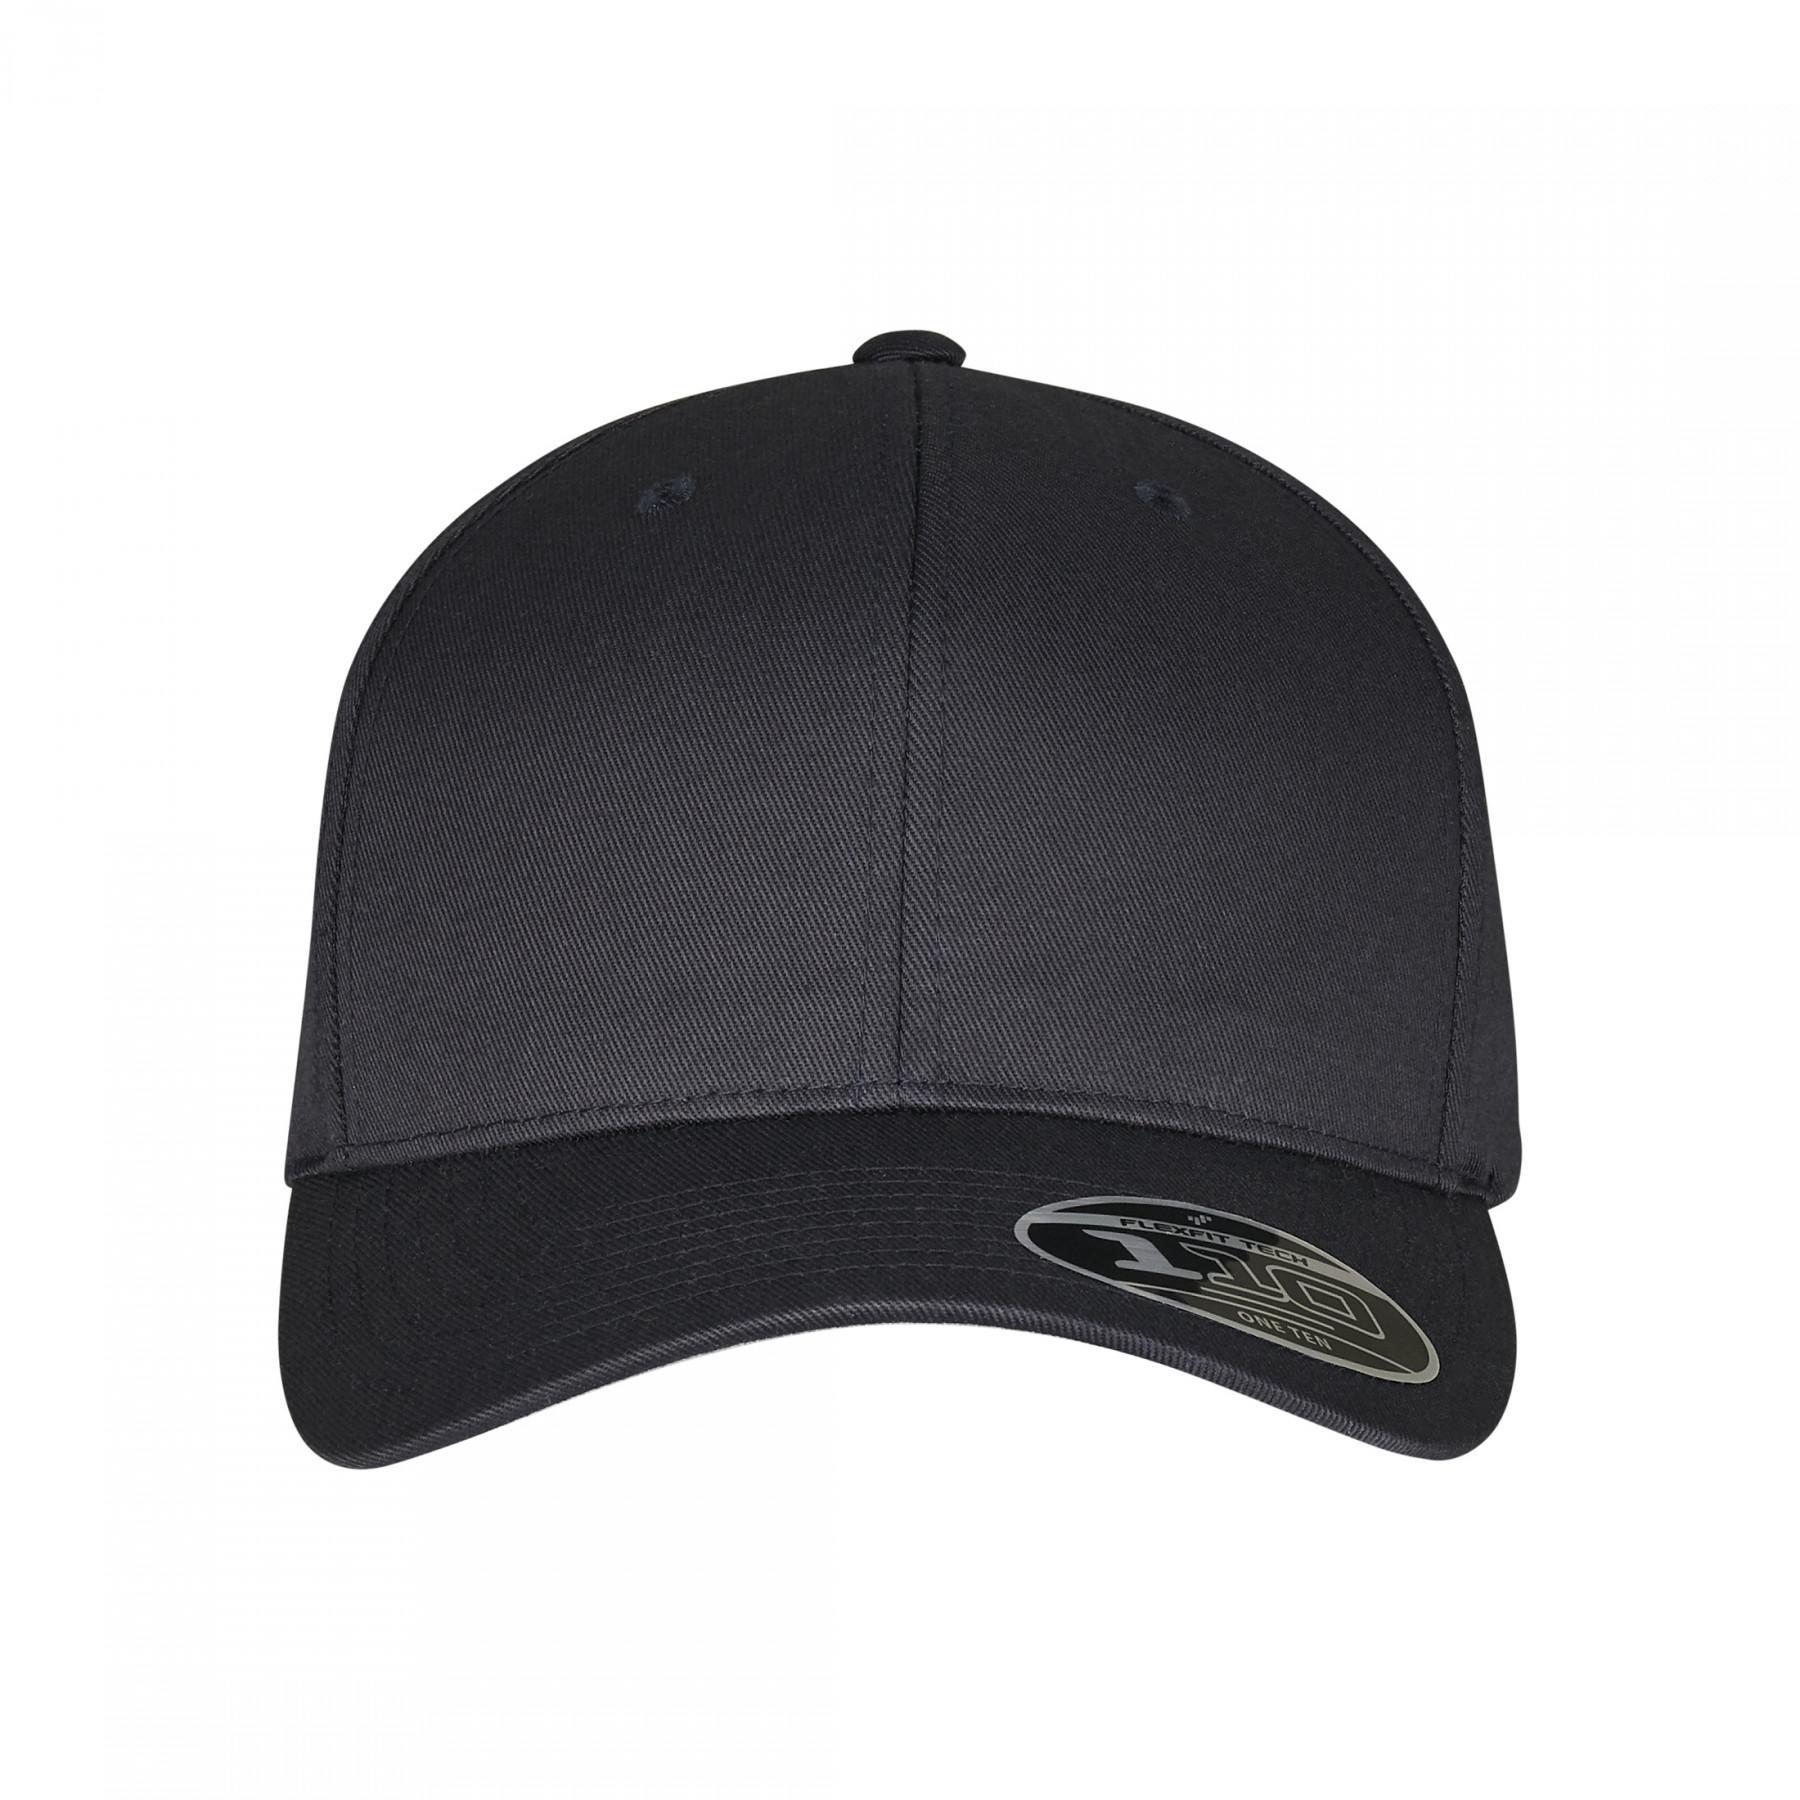 Urban Classic adjustable cap